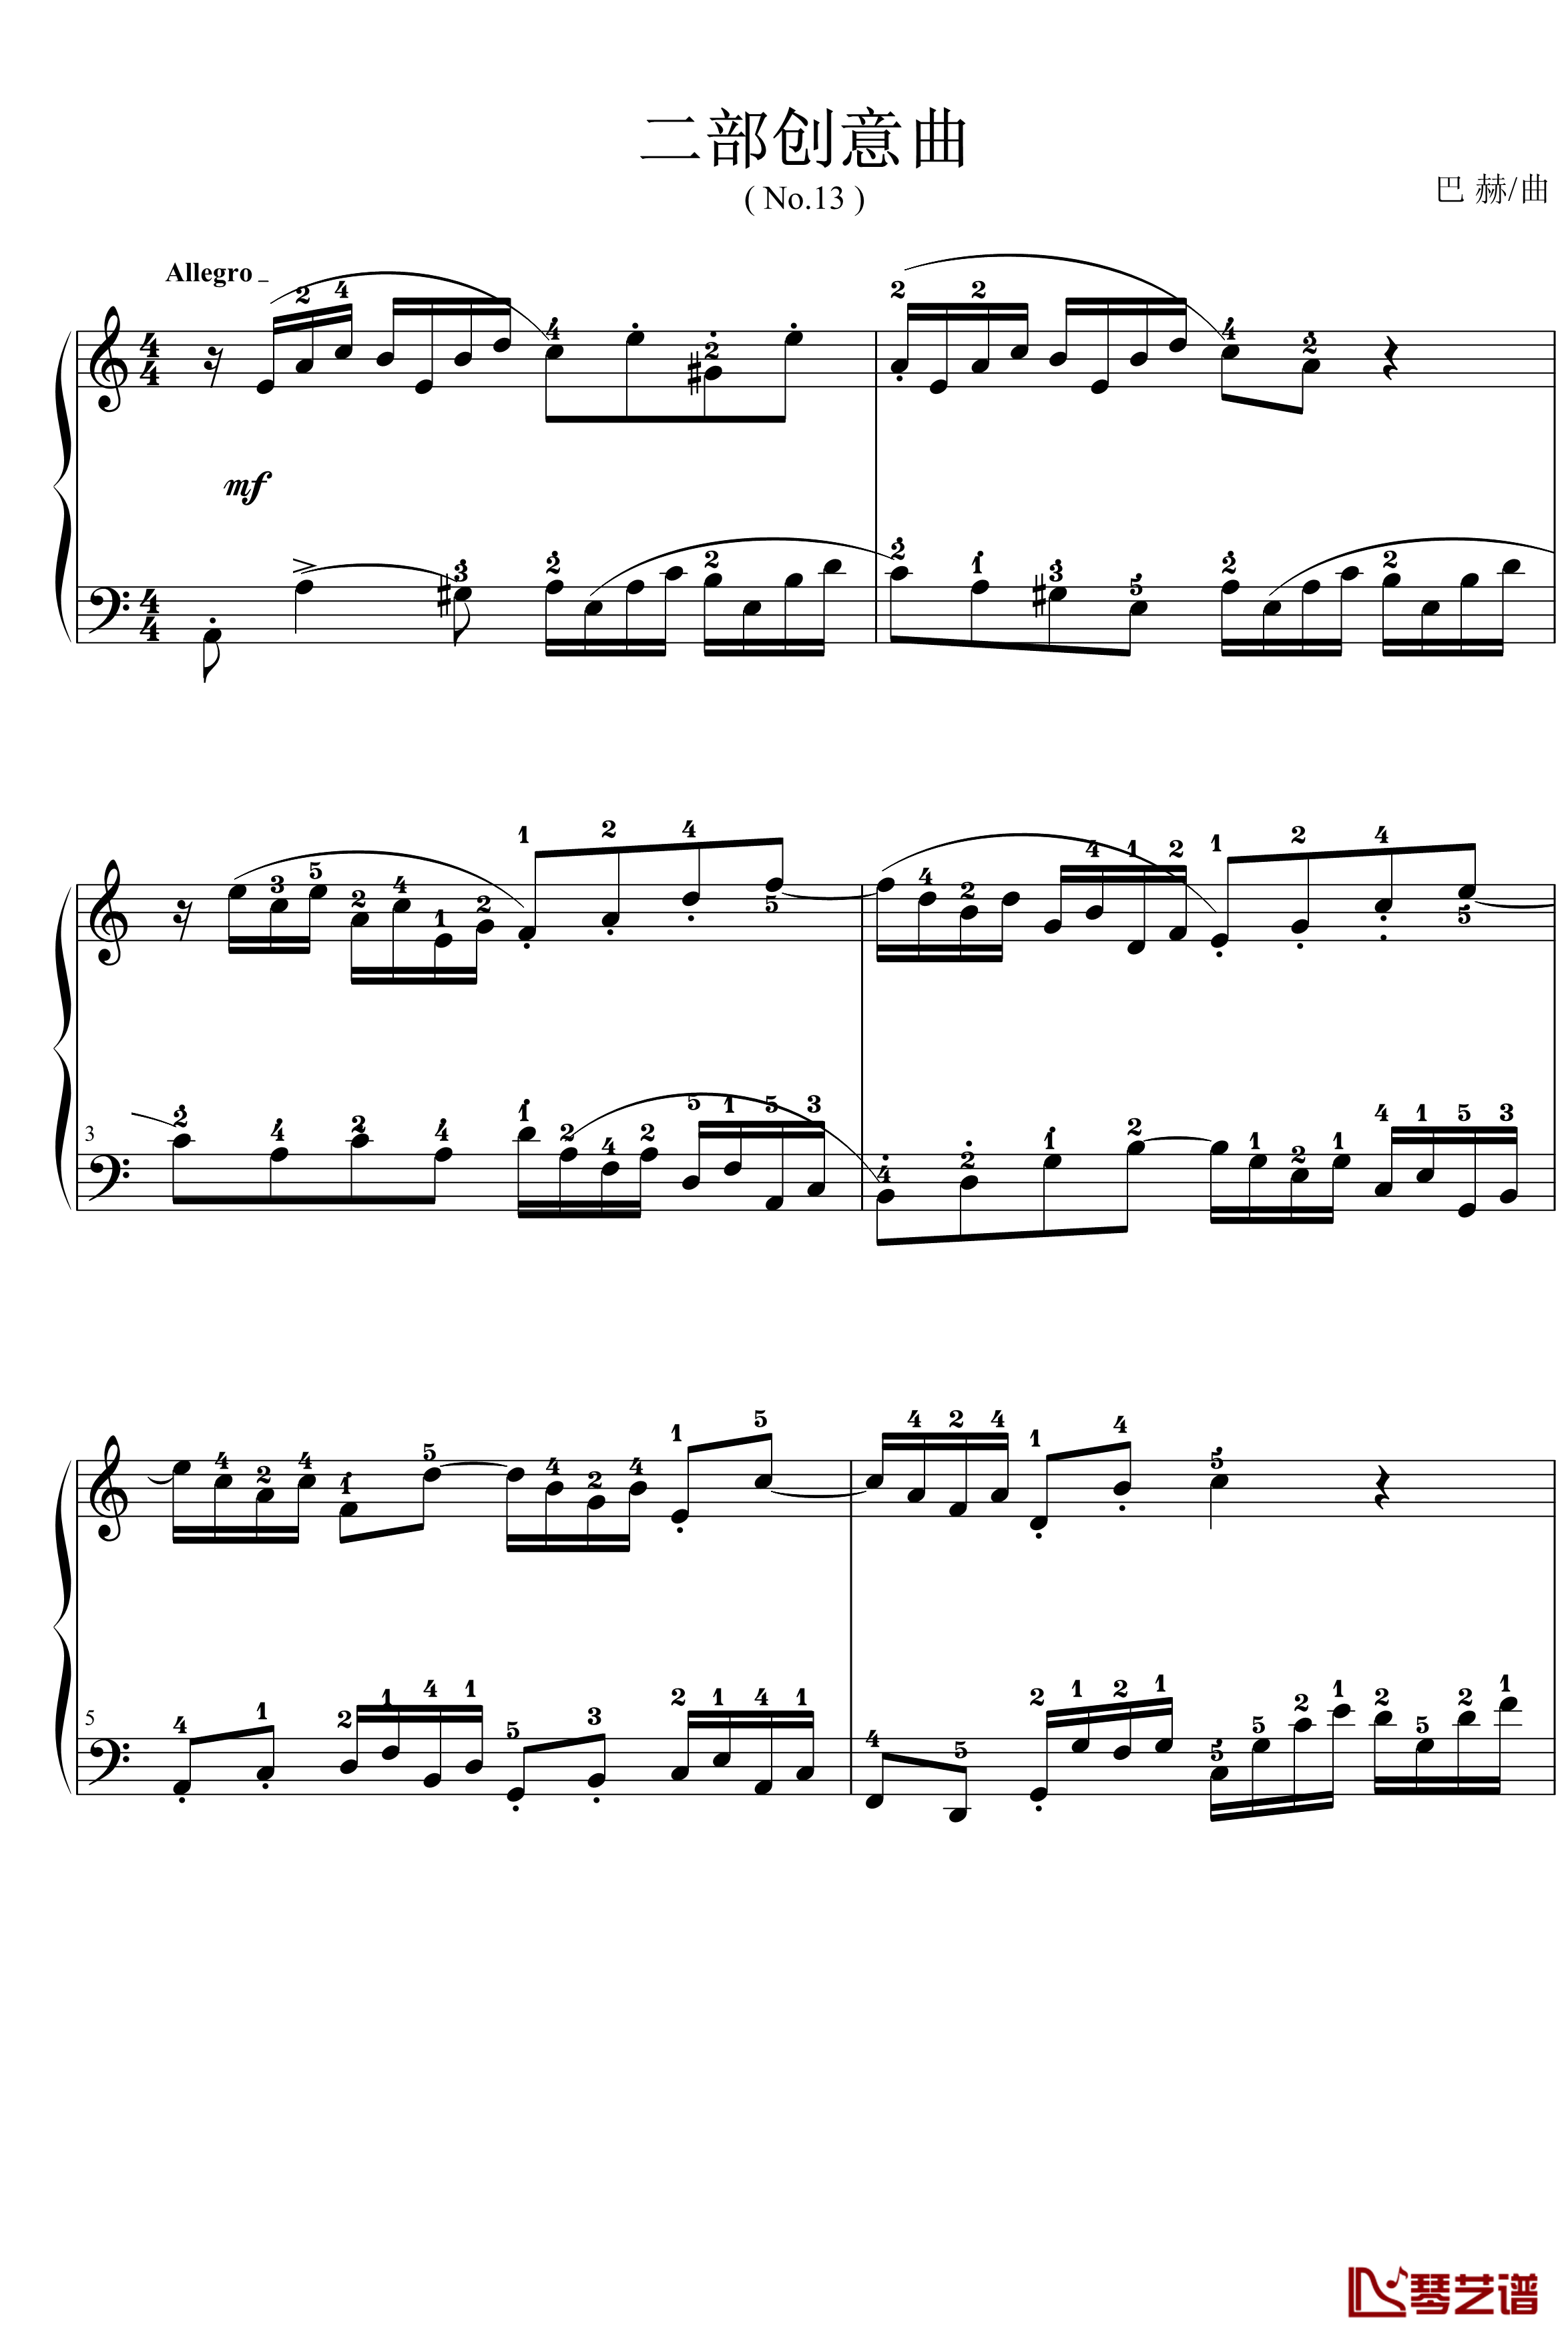 二部创意曲钢琴谱-No.13-巴赫-P.E.Bach1